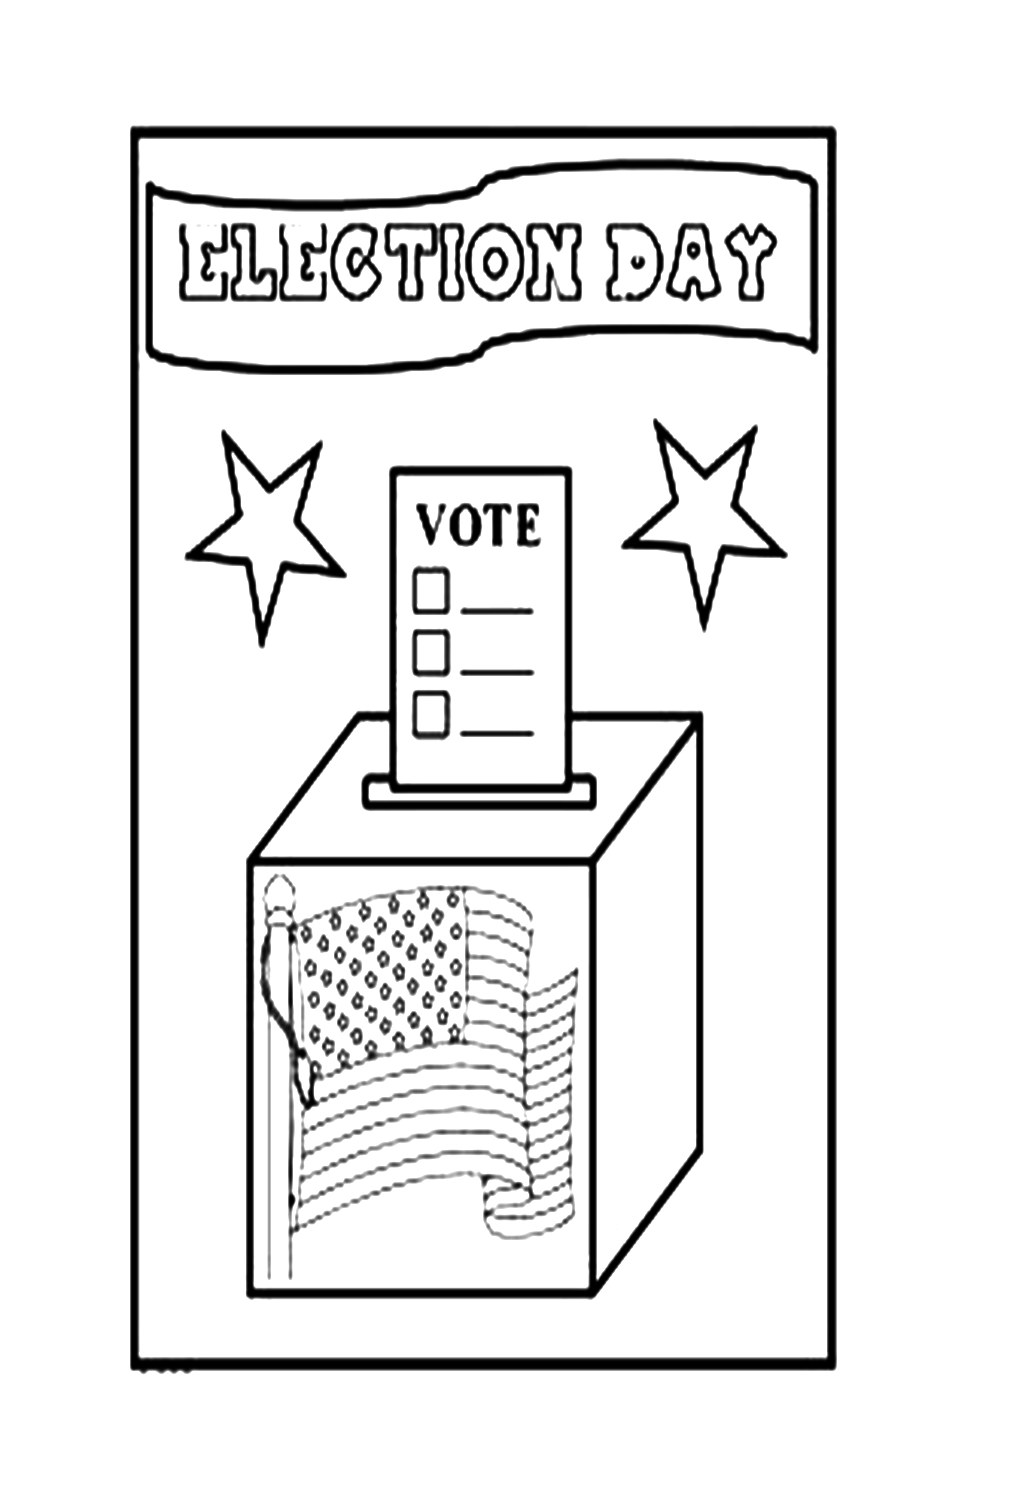 Giorno delle elezioni dal giorno delle elezioni